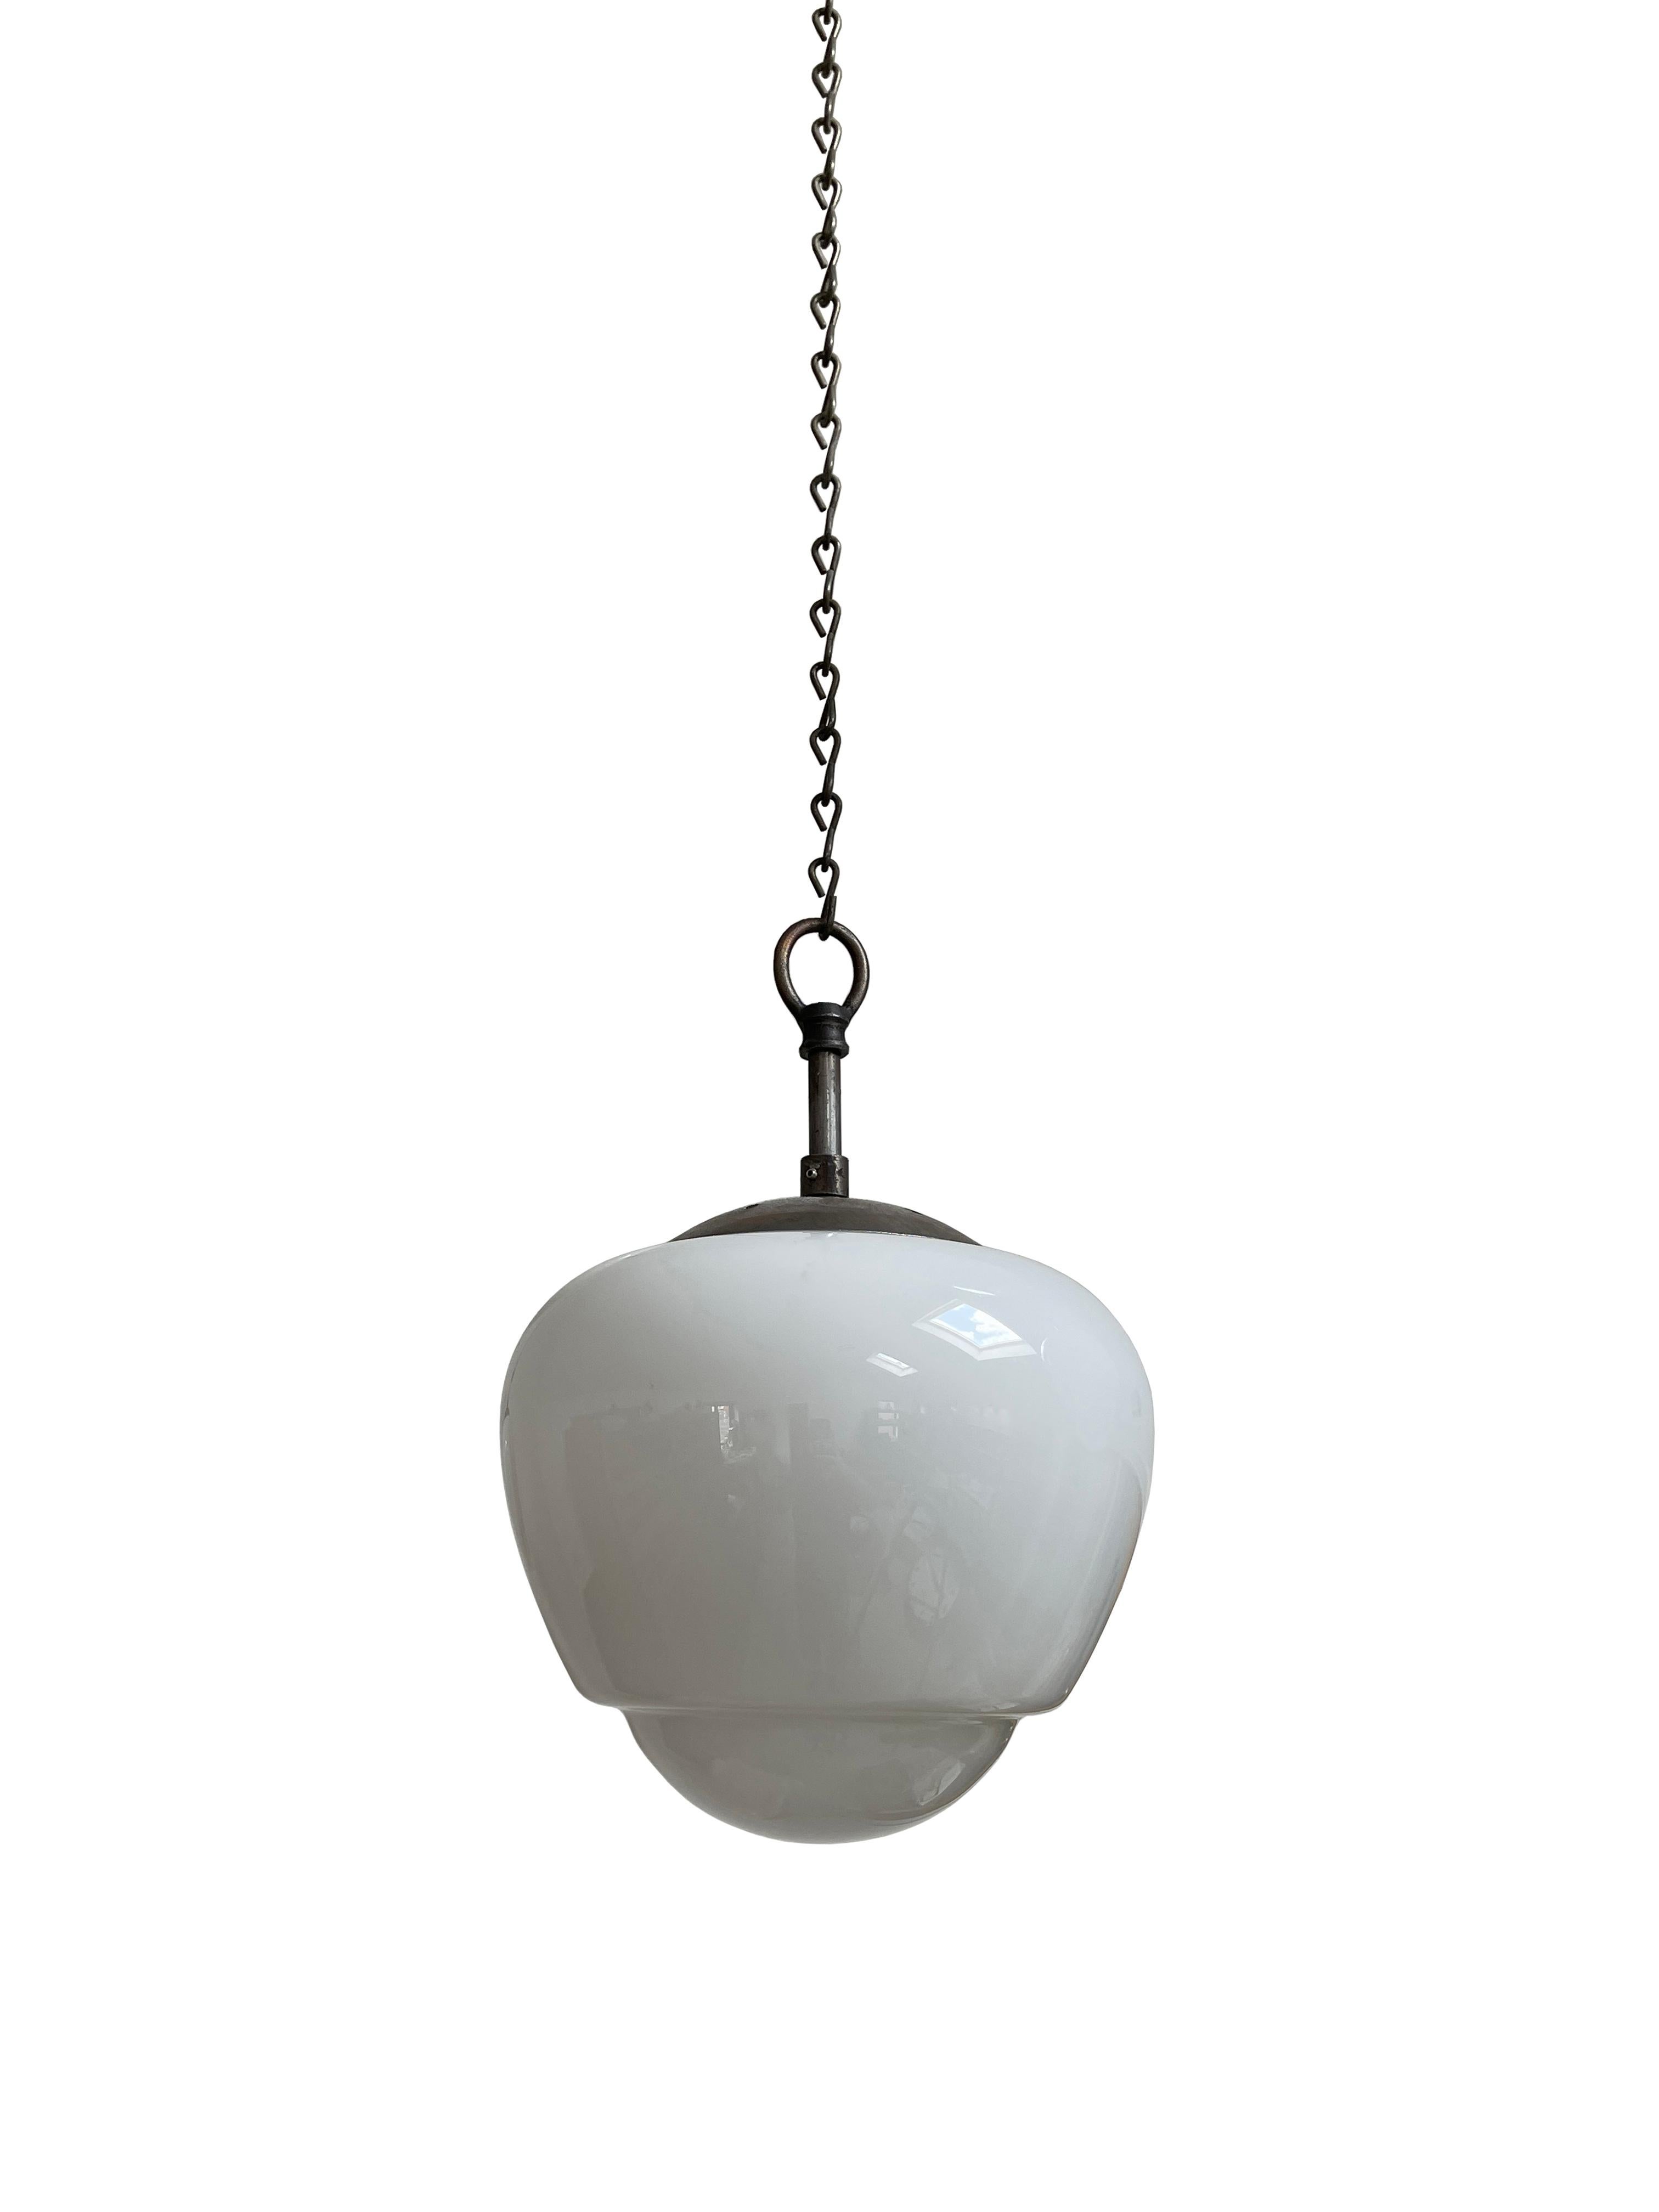 20th Century Set Antique Vintage Acorn Opaline White Milk Glass Ceiling Pendant Light Lamp